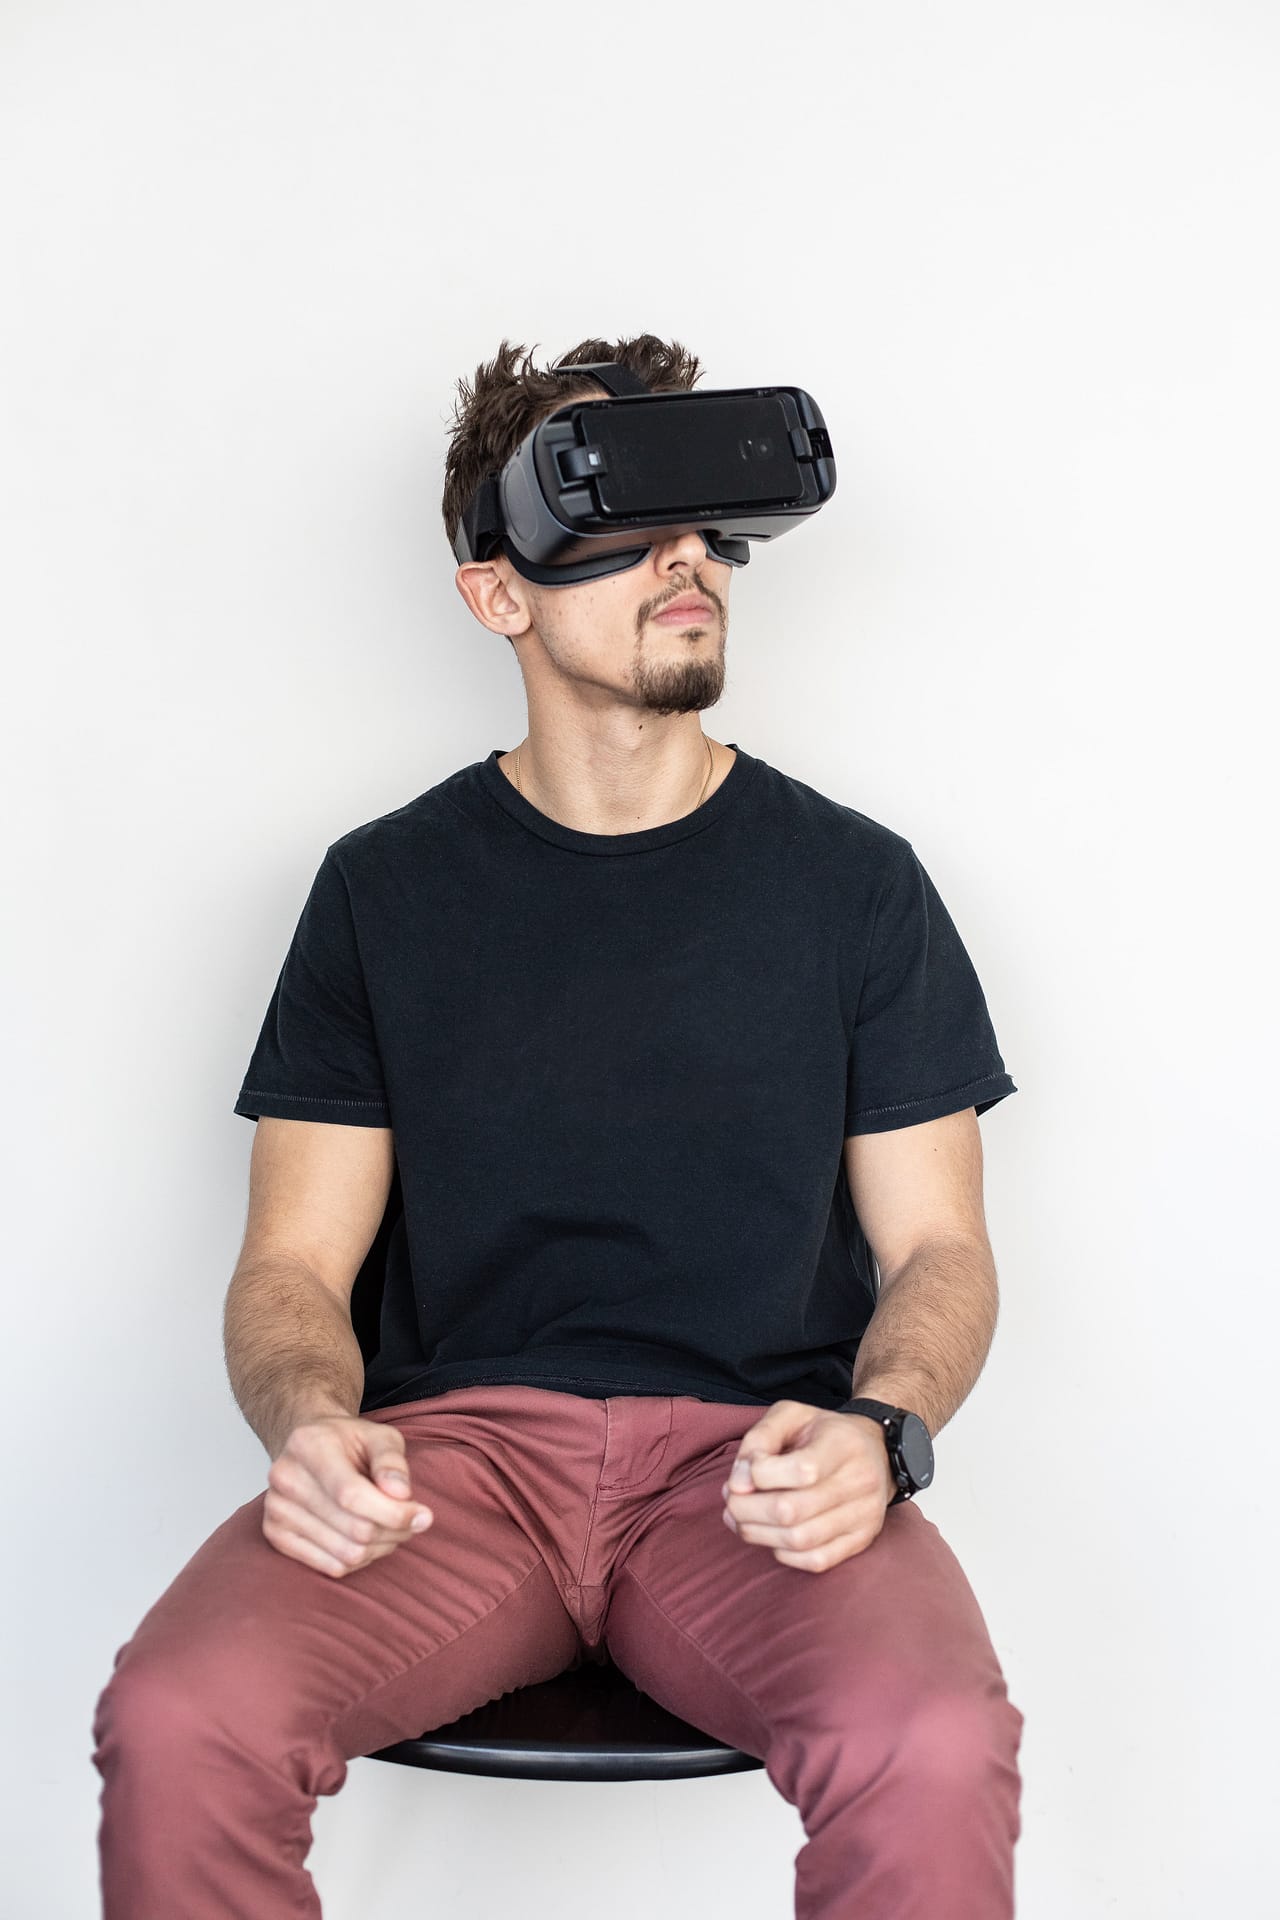 The Hidden Cost of VR: Broken TV Screens